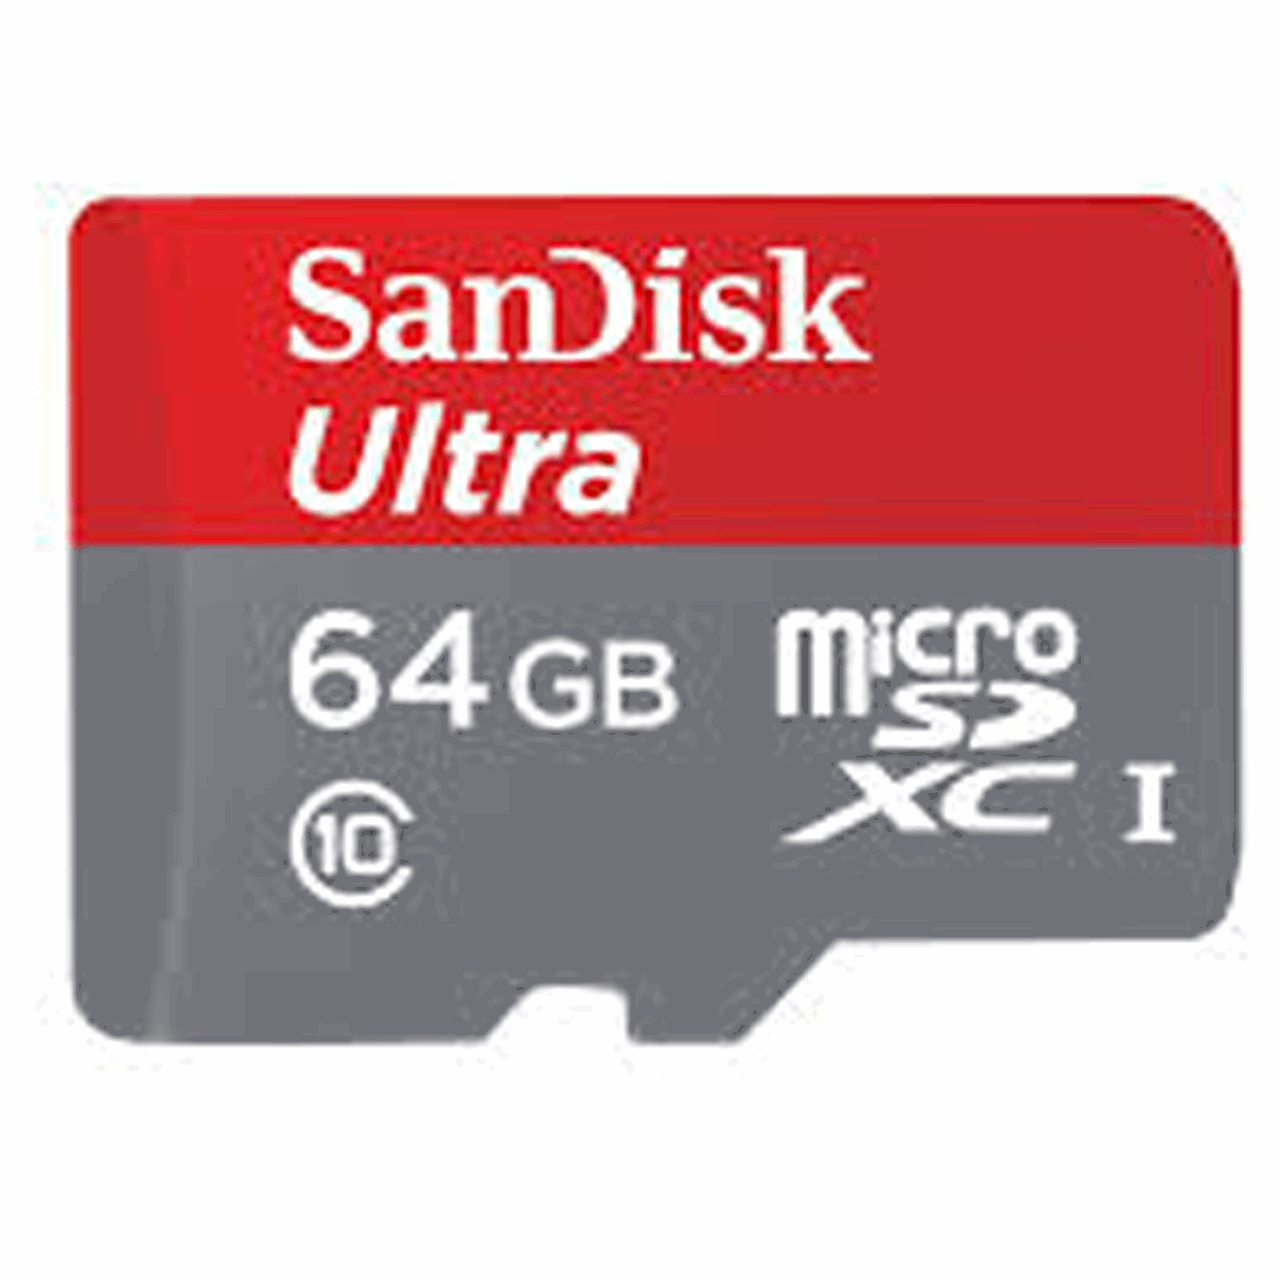 کارت حافظه MicroSDXC سن دیسک مدلUltra کلاس 10 استاندارد UHS-I U1 سرعت 80MBps همراه با آداپتور SD ظرفیت 64 گیگابایت